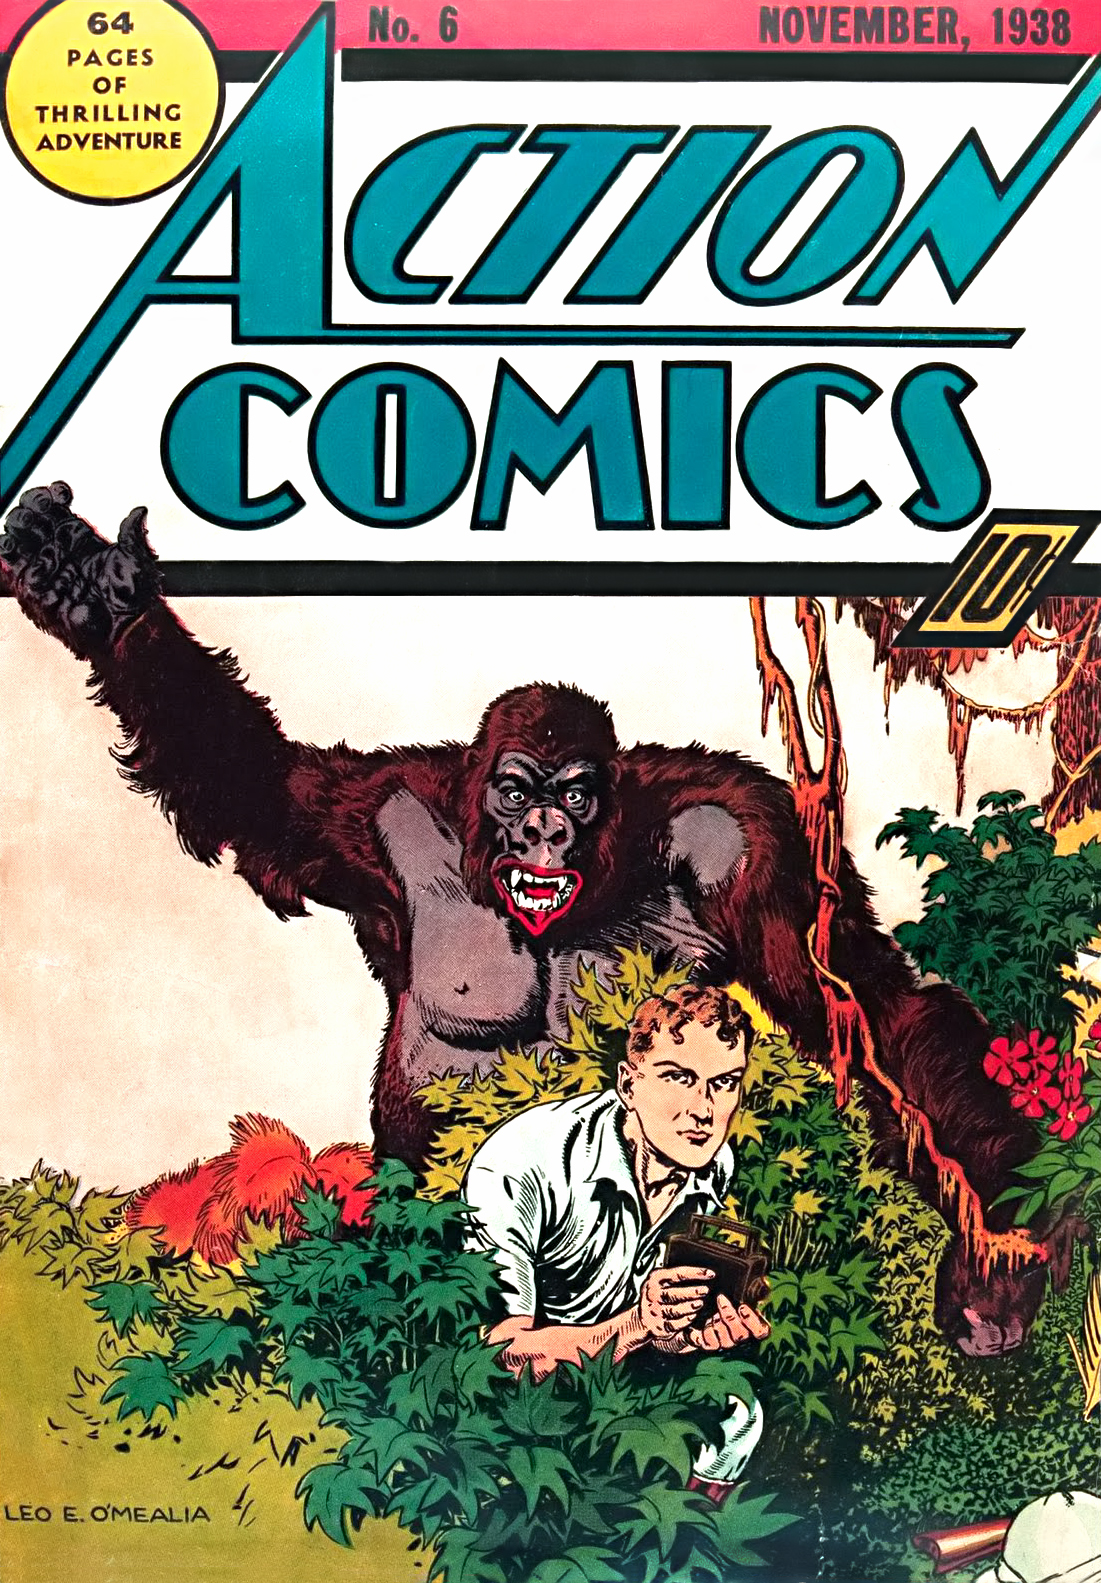 Action Comics Vol. 1 #6